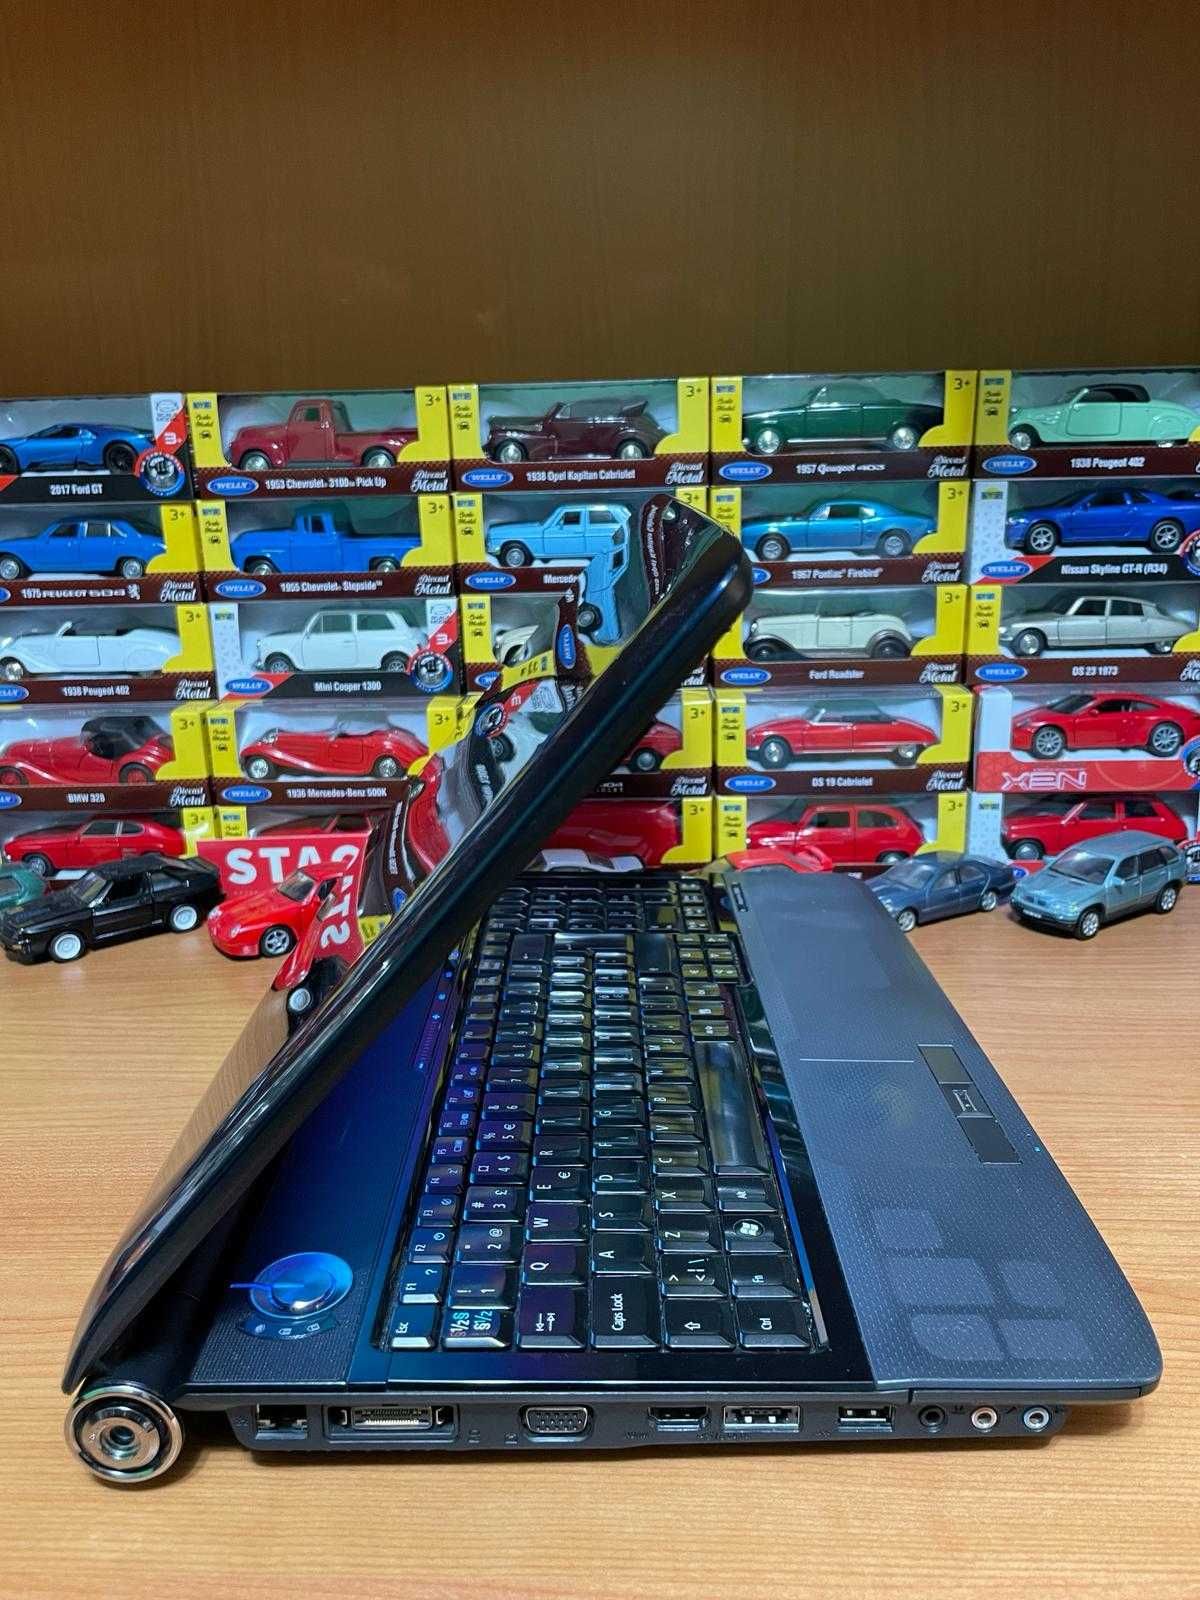 Laptop Acer 15'6 - i3 - 4 GB ram